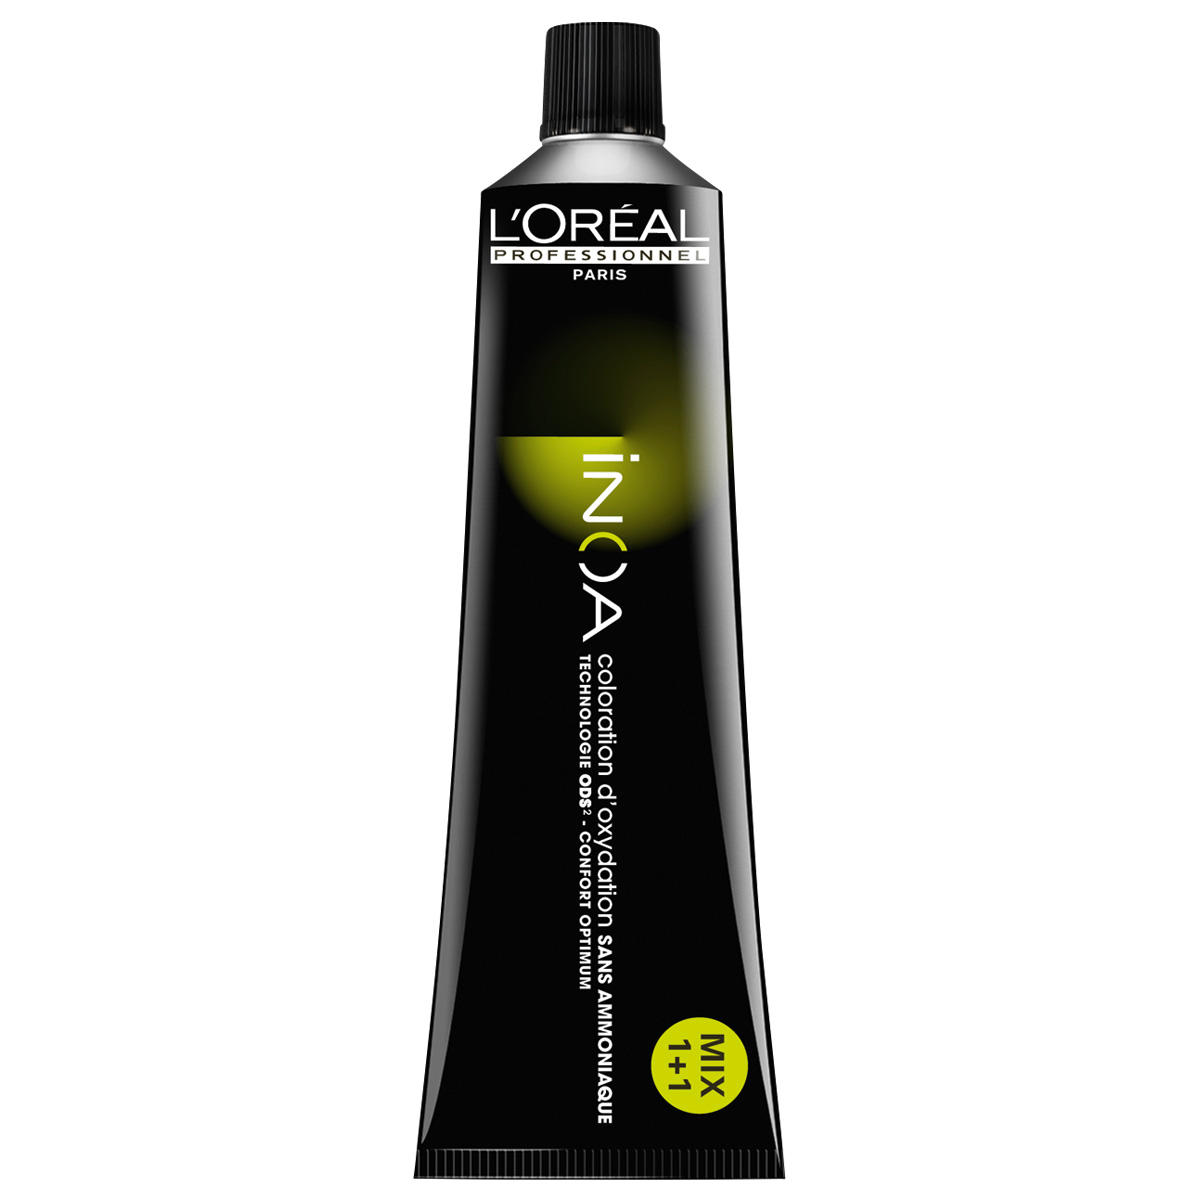 L'Oréal Professionnel Paris Coloration 4 Marrón medio, tubo 60 ml - 1